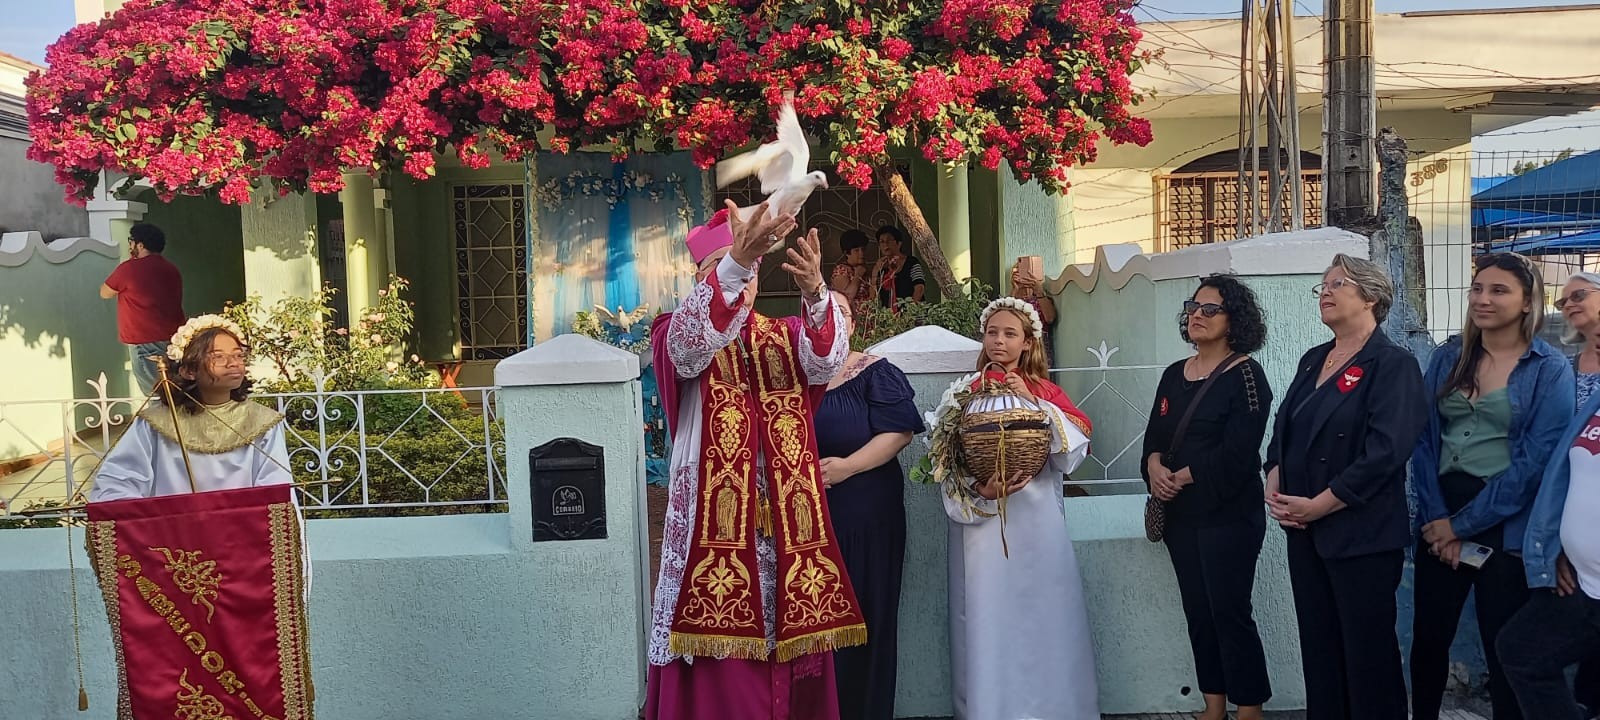 Milhares de devotos acompanham o encerramento da Festa do Divino de Mogi das Cruzes